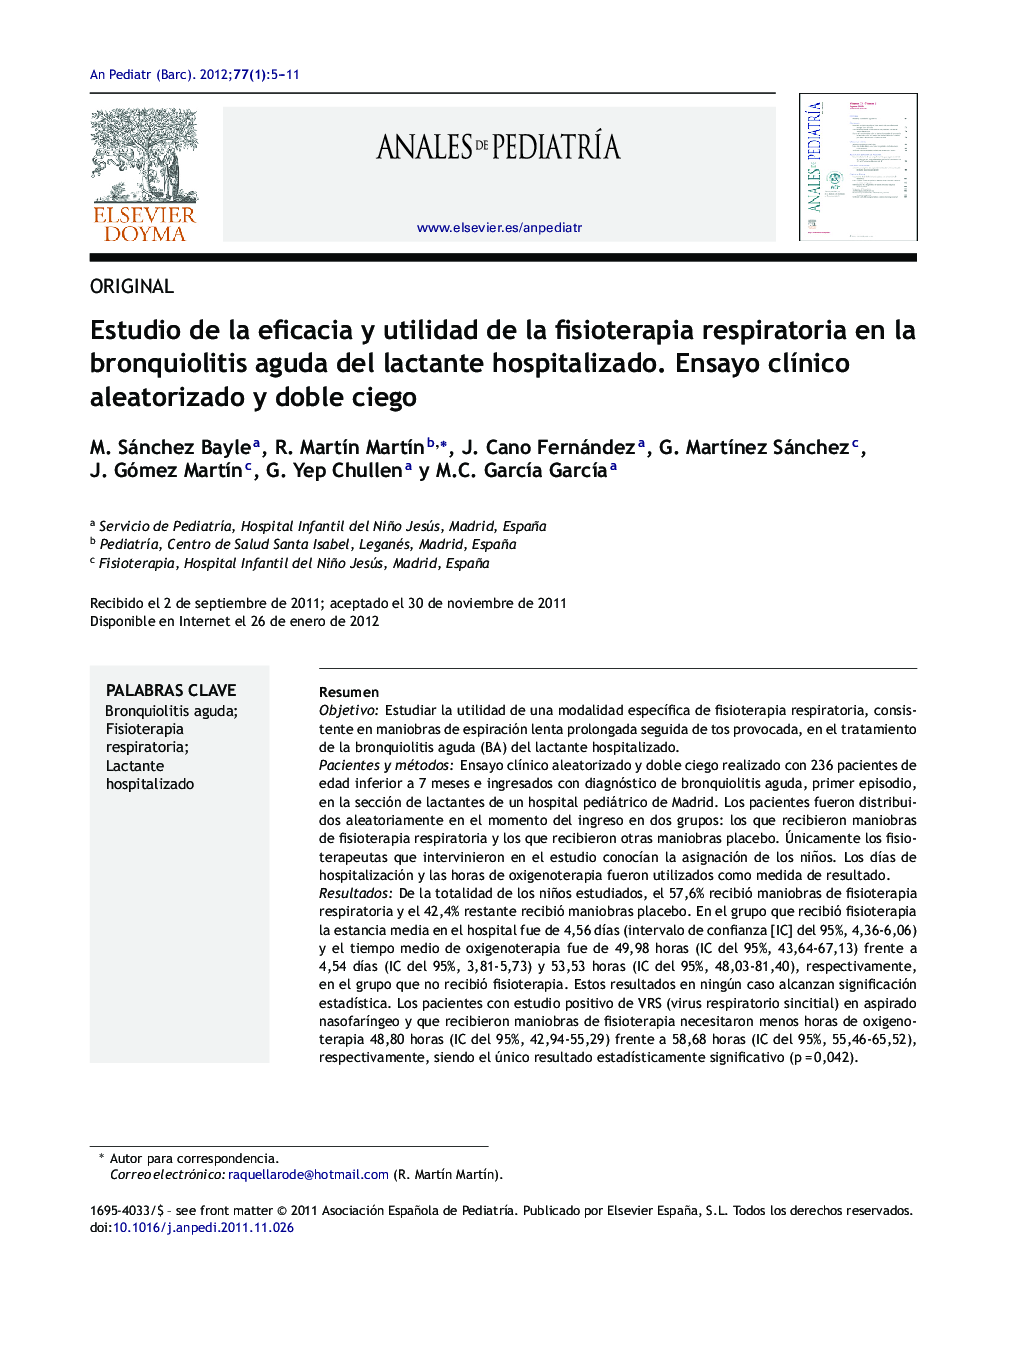 Estudio de la eficacia y utilidad de la fisioterapia respiratoria en la bronquiolitis aguda del lactante hospitalizado. Ensayo clínico aleatorizado y doble ciego